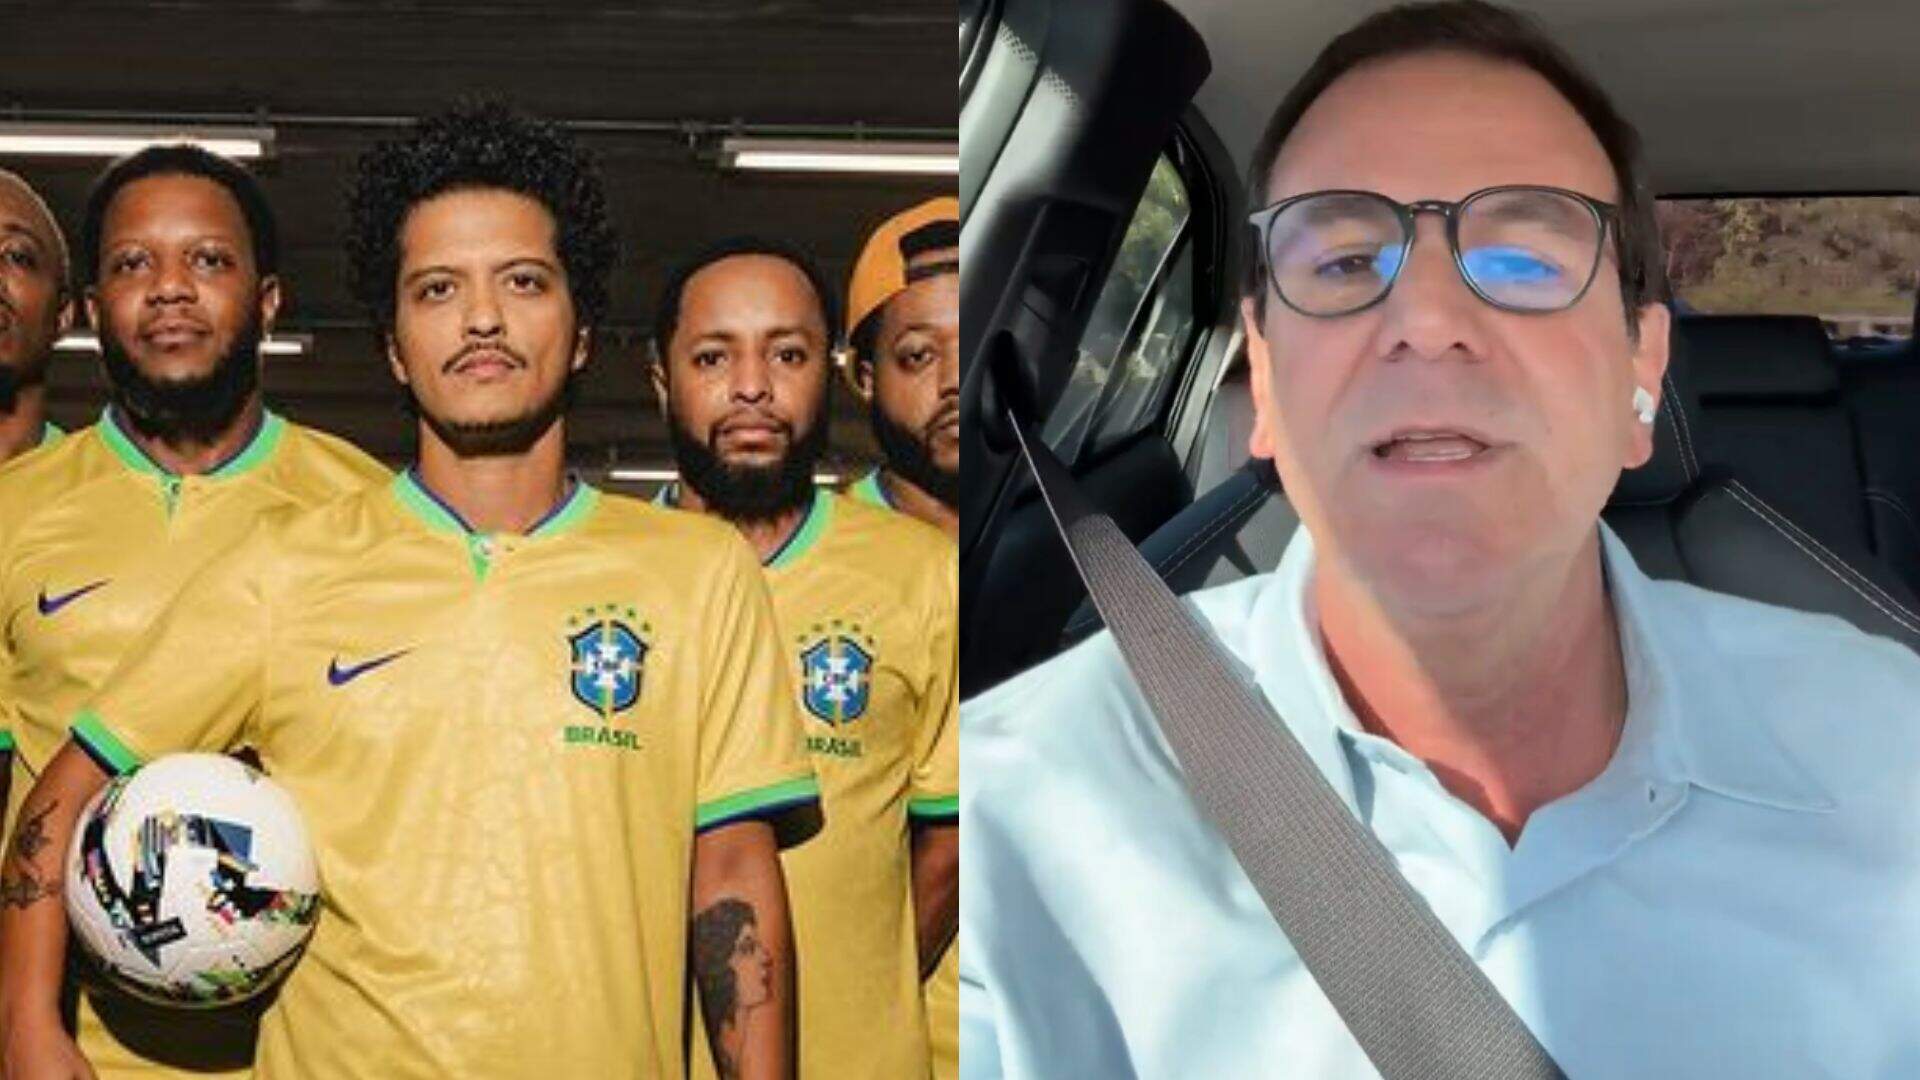 Show de Bruno Mars pode não acontecer no Rio de Janeiro; entenda a polêmica - Metropolitana FM